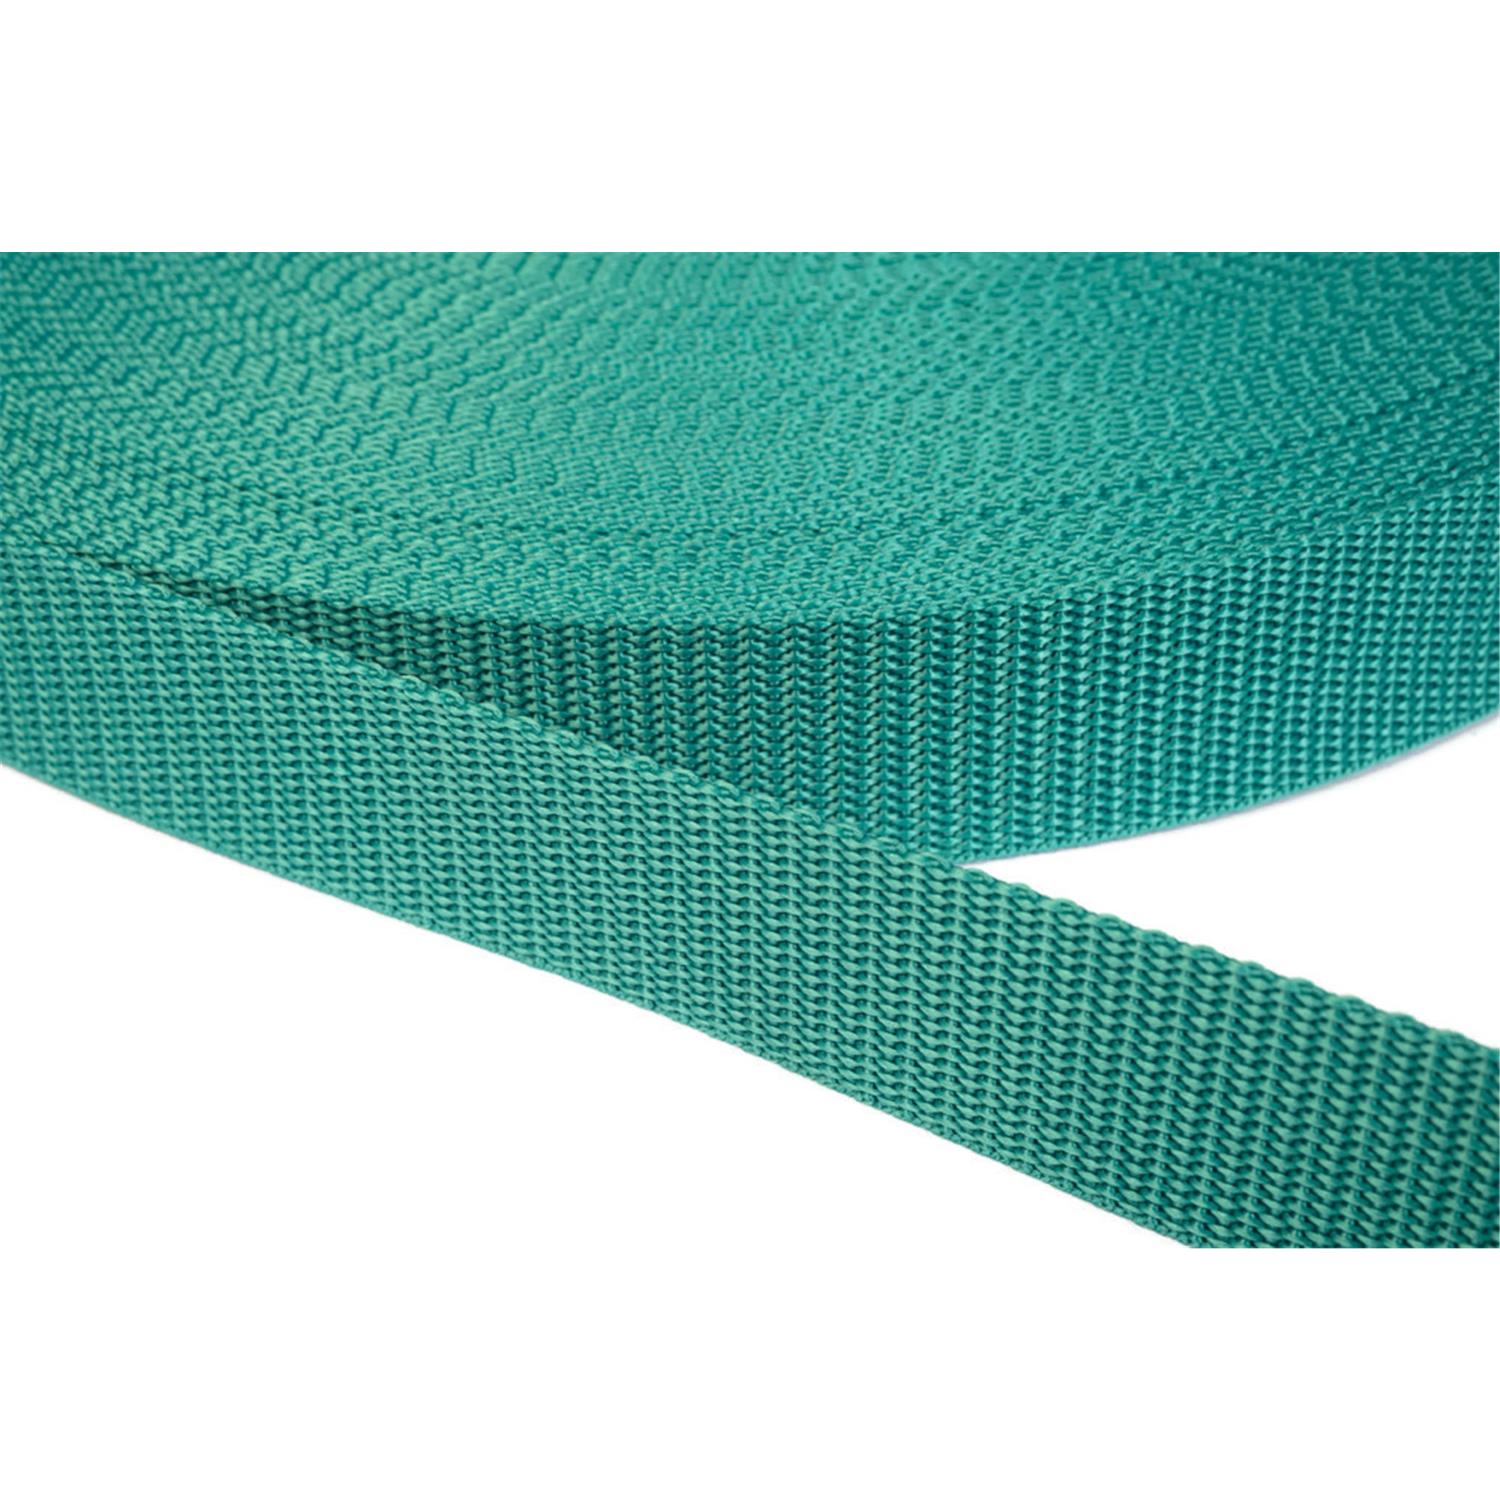 Gurtband 15mm breit aus Polypropylen in 41 Farben 31 - smaragdgrün 12 Meter